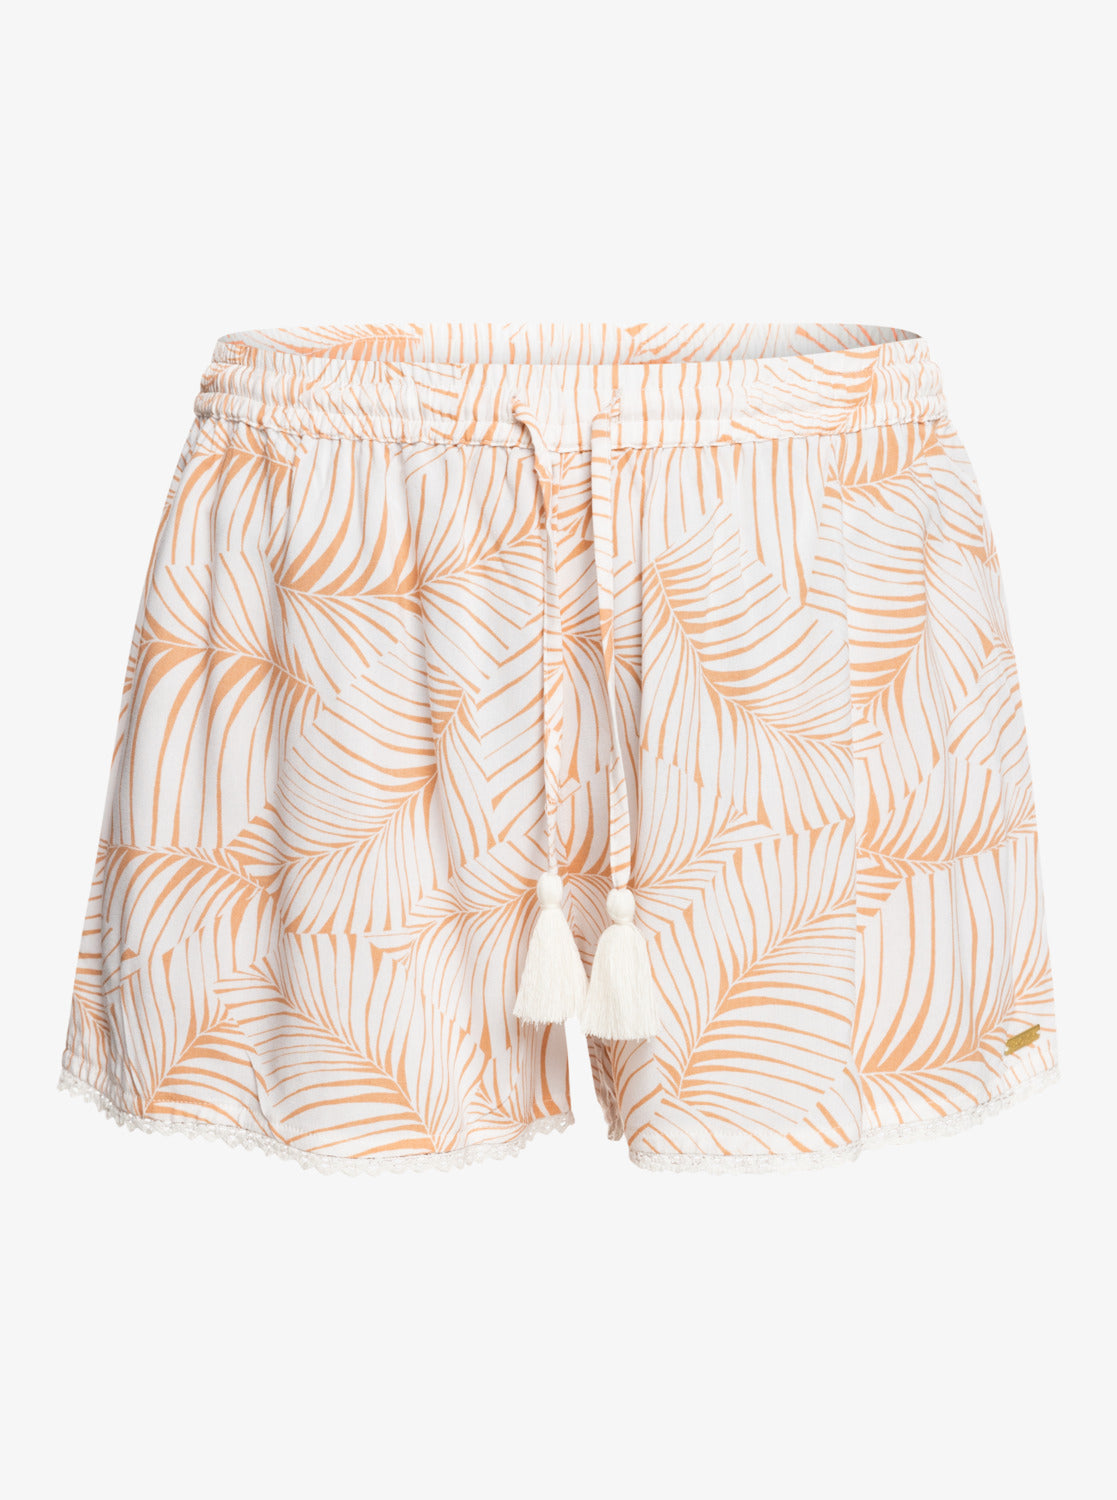 Roxy Salty Tan - Shorts for Women - ==SALE -==